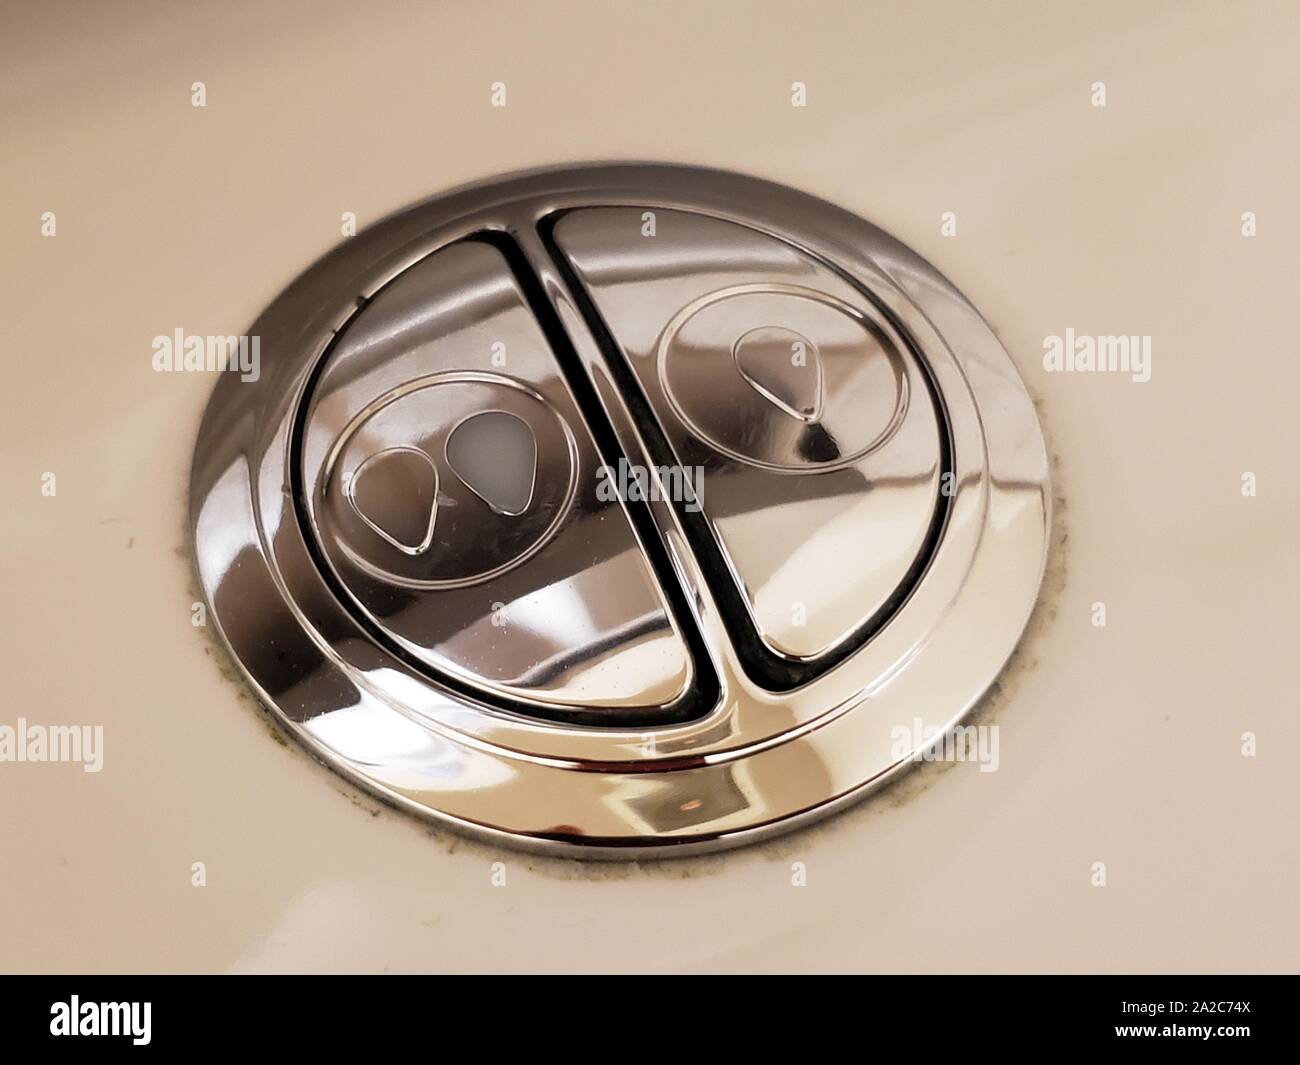 Gros plan des boutons d'un système de toilettes à double rinçage, utilisé pour conserver l'eau en permettant aux utilisateurs de sélectionner deux niveaux différents de volume de rinçage des toilettes, 2 août 2019. () Banque D'Images